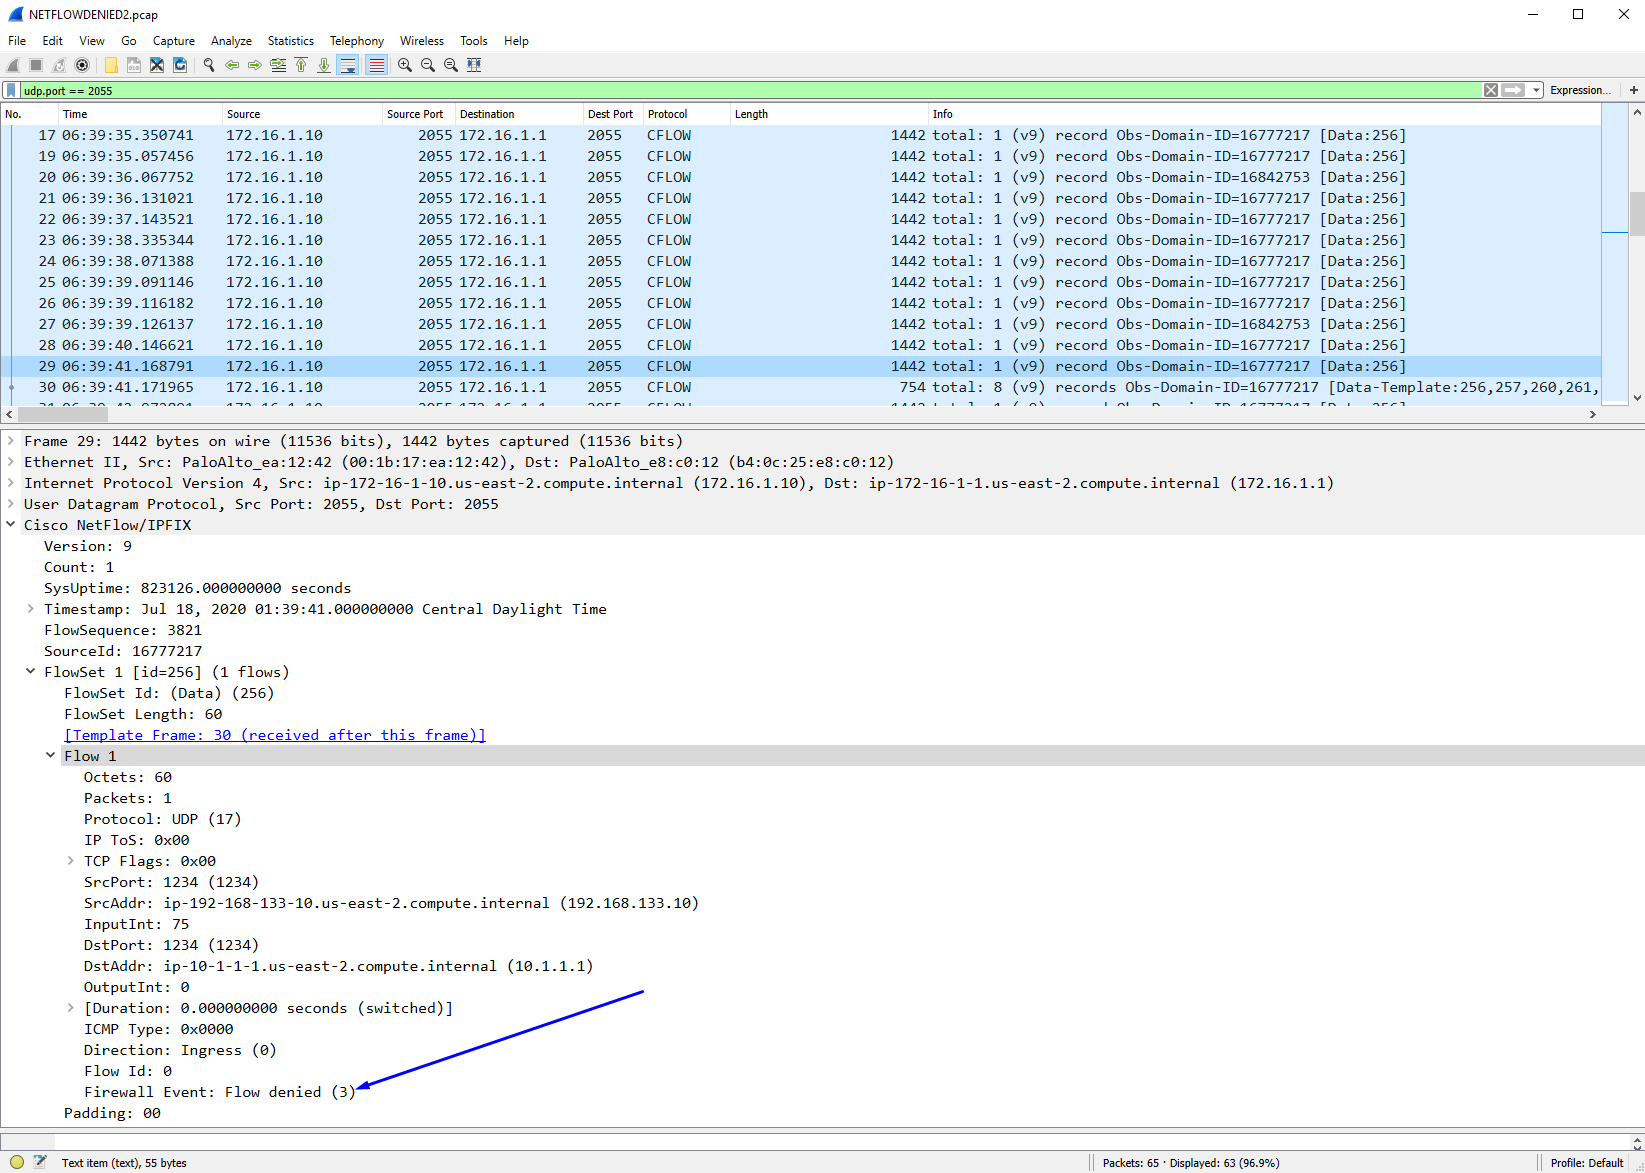 Ejemplo en Wireshark de un paquete netflow de un firewall flujo denegado